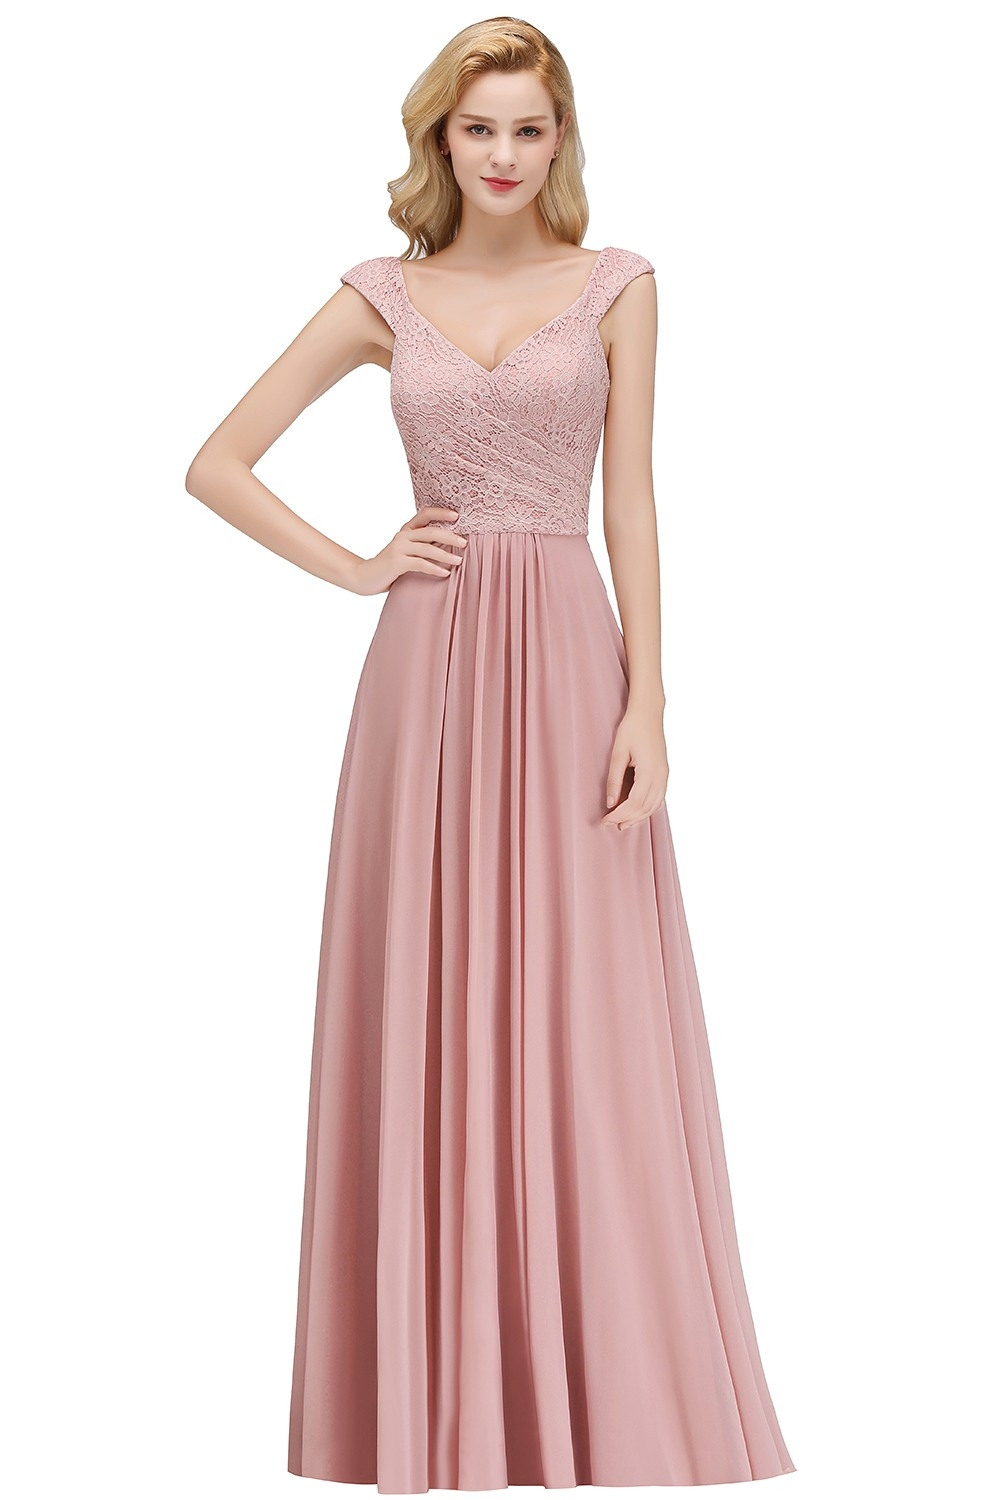 20 Top Kleid Lang Altrosa Bester Preis  Abendkleid